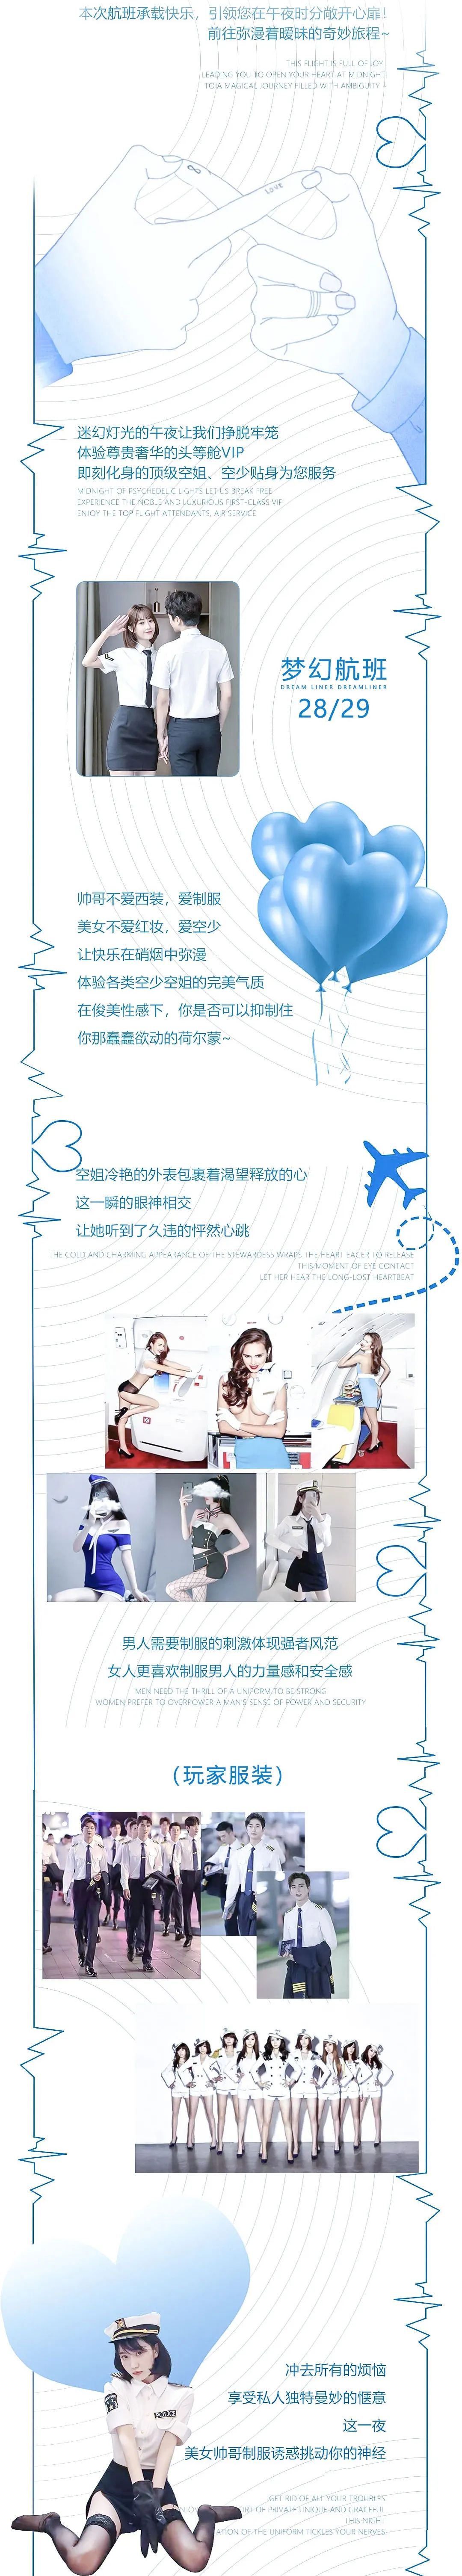 #6/28 #6/29 梦幻航班 Cool Party 邀你你准时登机！-广州HJ酒吧/HJ CLUB